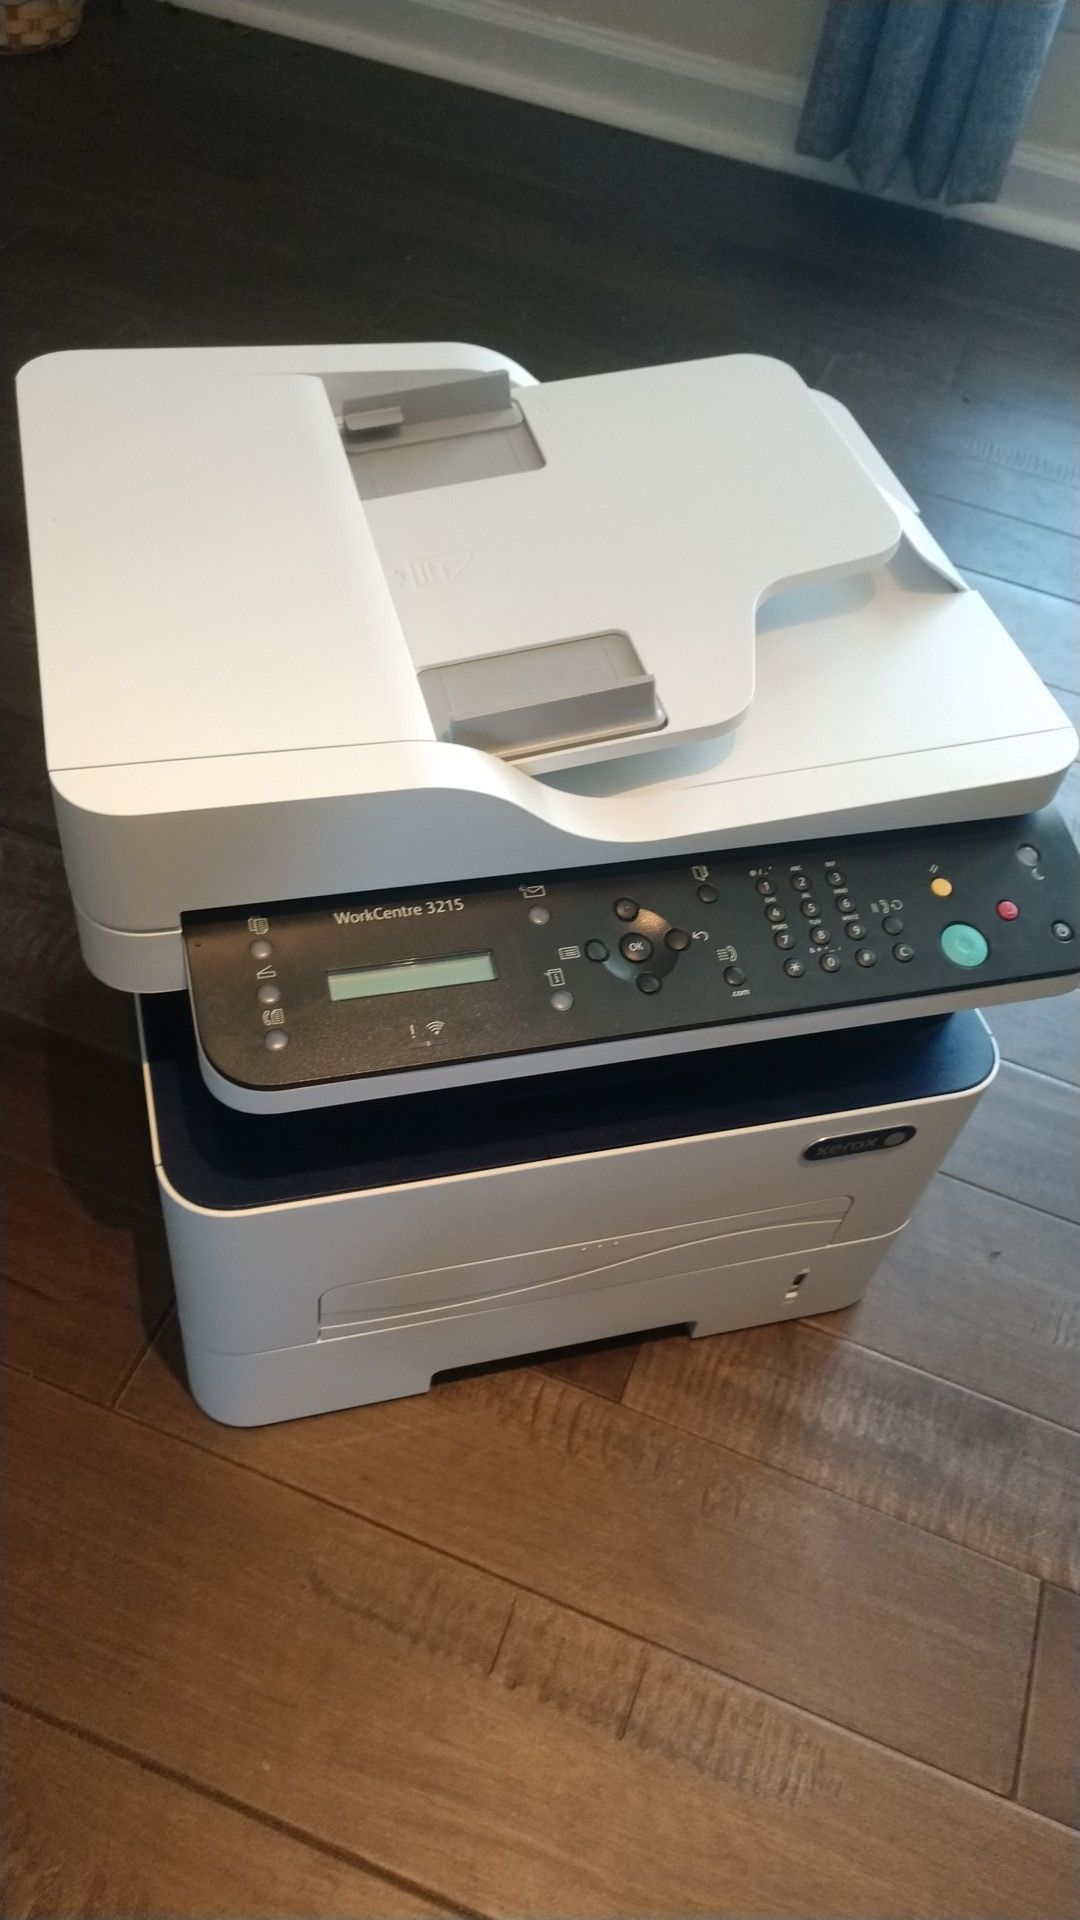 Xerox WorkCenter 3215, Printer, Copier, Scanner, Fax